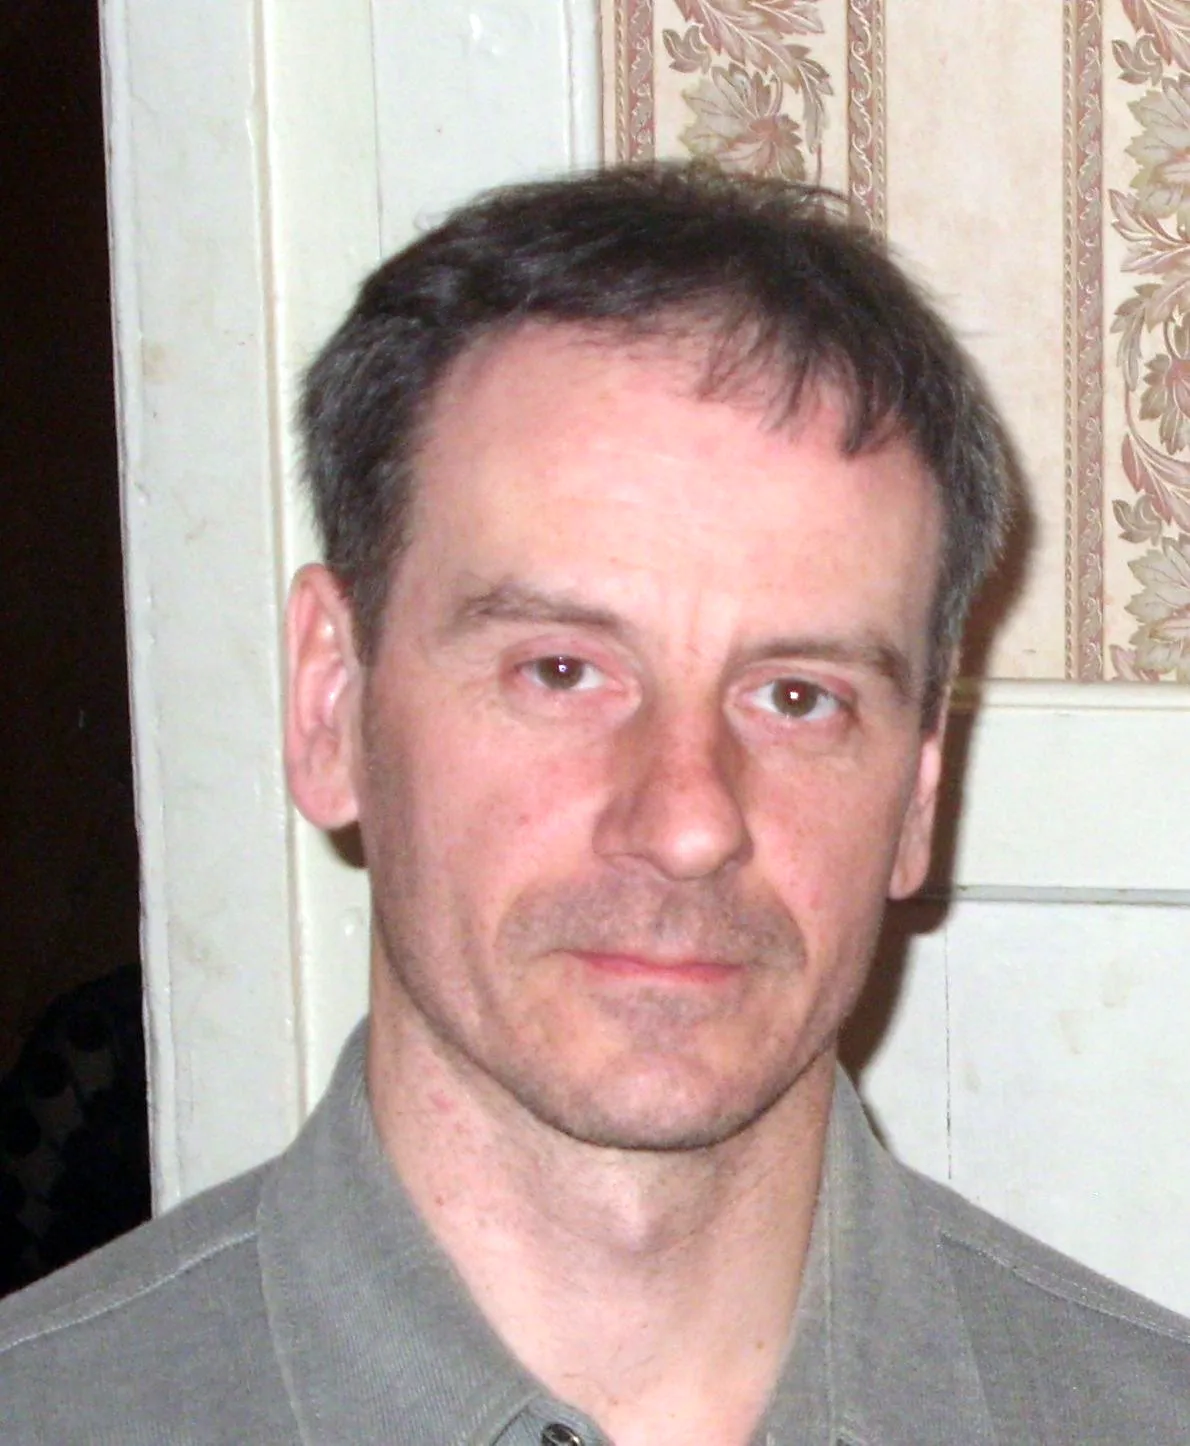 Евгений Жариков